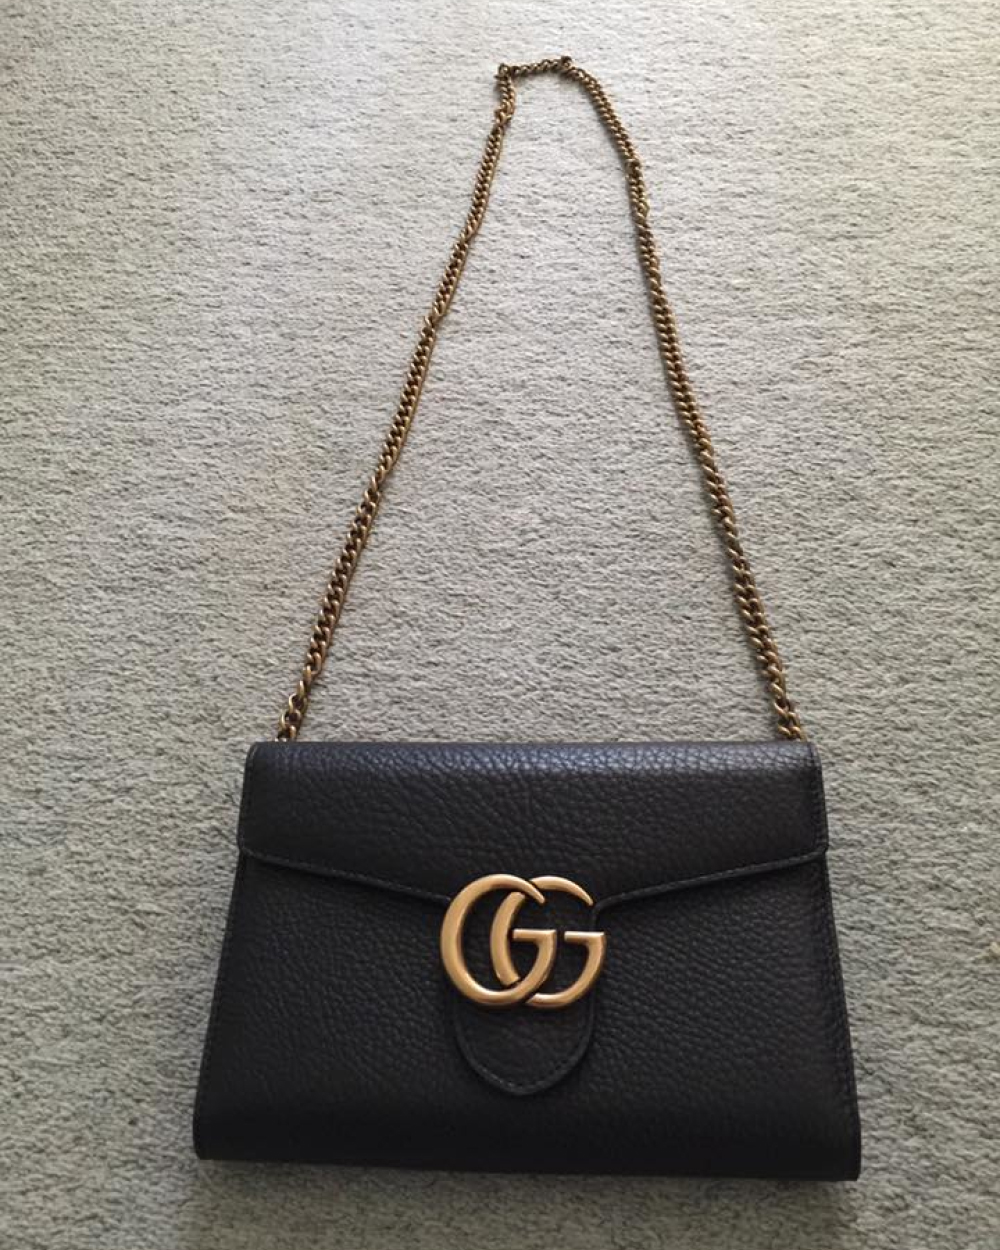 Gucci Bag, $1210